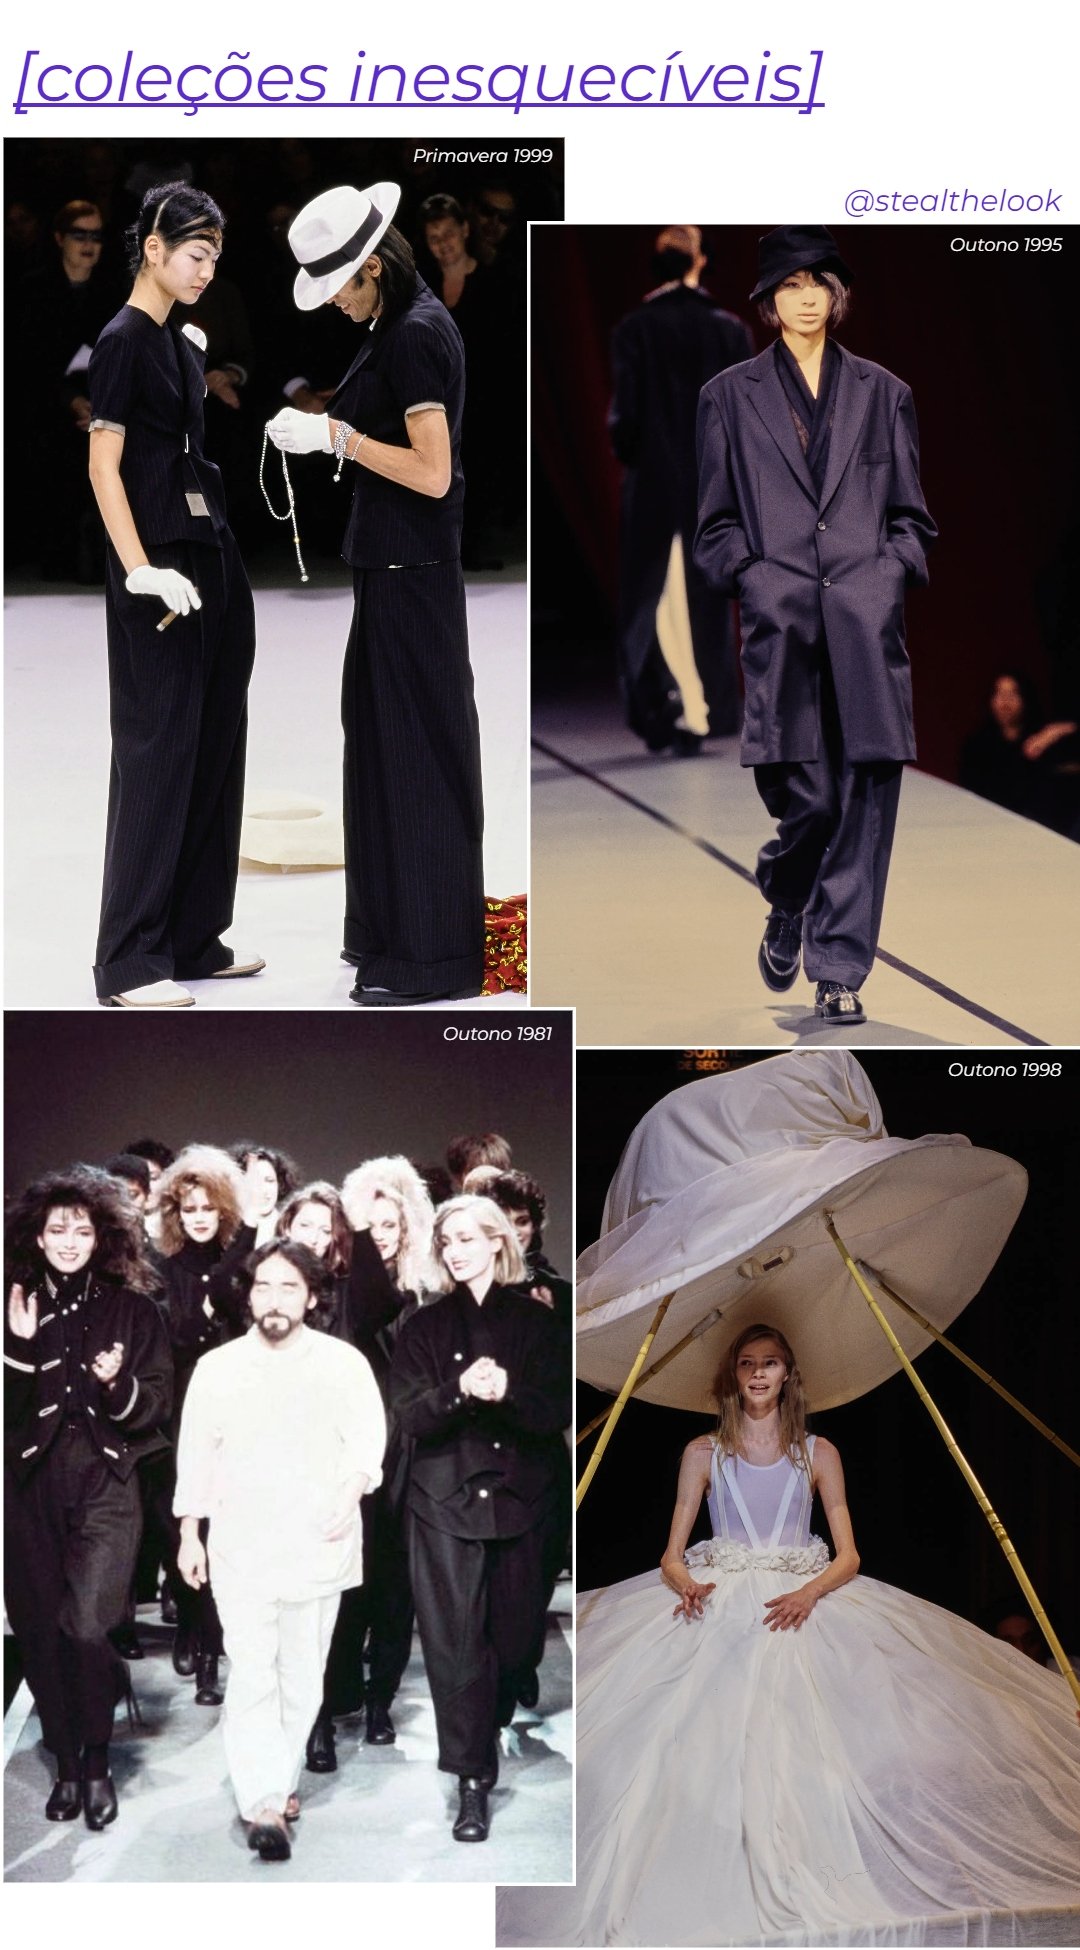 Coleções e desfiles memoráveis do estilista - roupas diversas - asiáticos na moda - primavera/outono - colagem de imagens - https://stealthelook.com.br